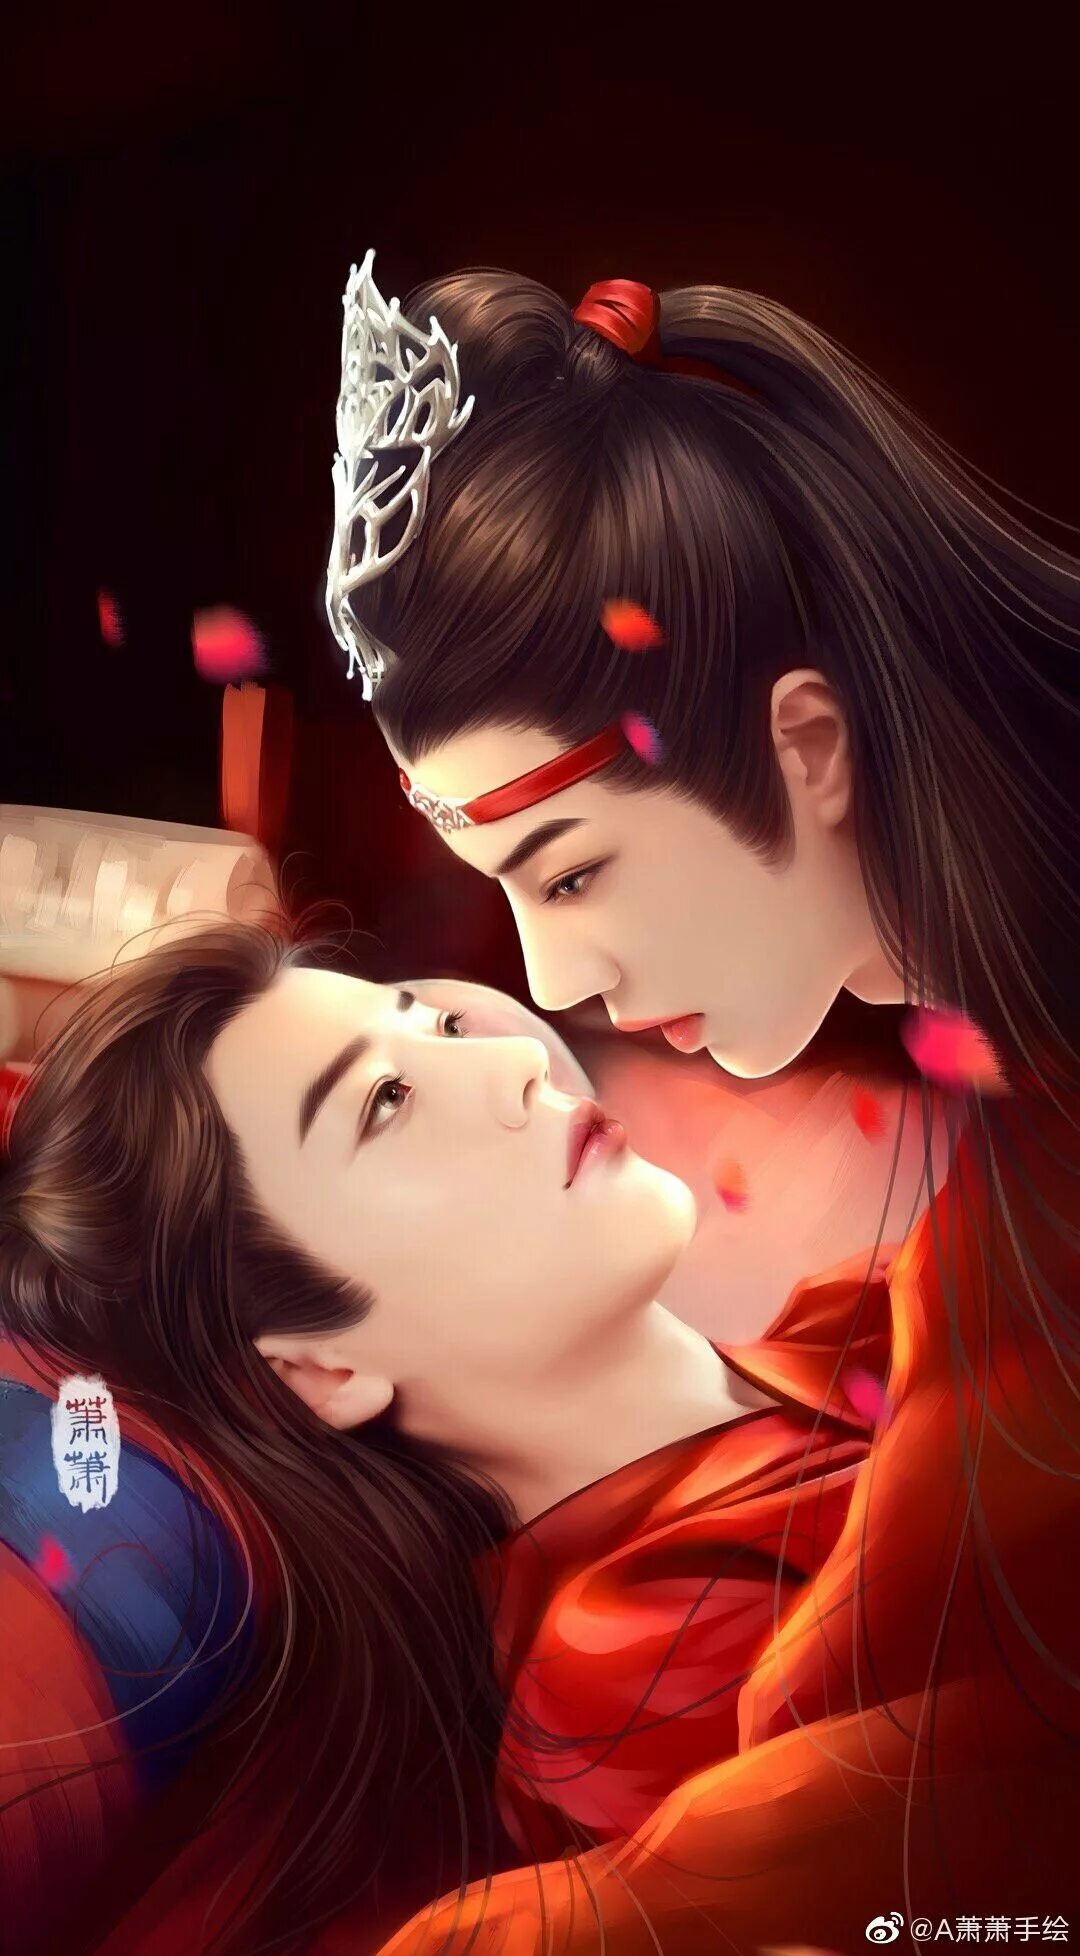 Неукротимый Повелитель Чэнь Цин дорама поцелуй. Неукротимый Повелитель Чэнь Цин дорама поцелуй арт. Ван ибо и Сяо Чжань поцелуй. Ван и бо и Сяо Чжань поцелуй.